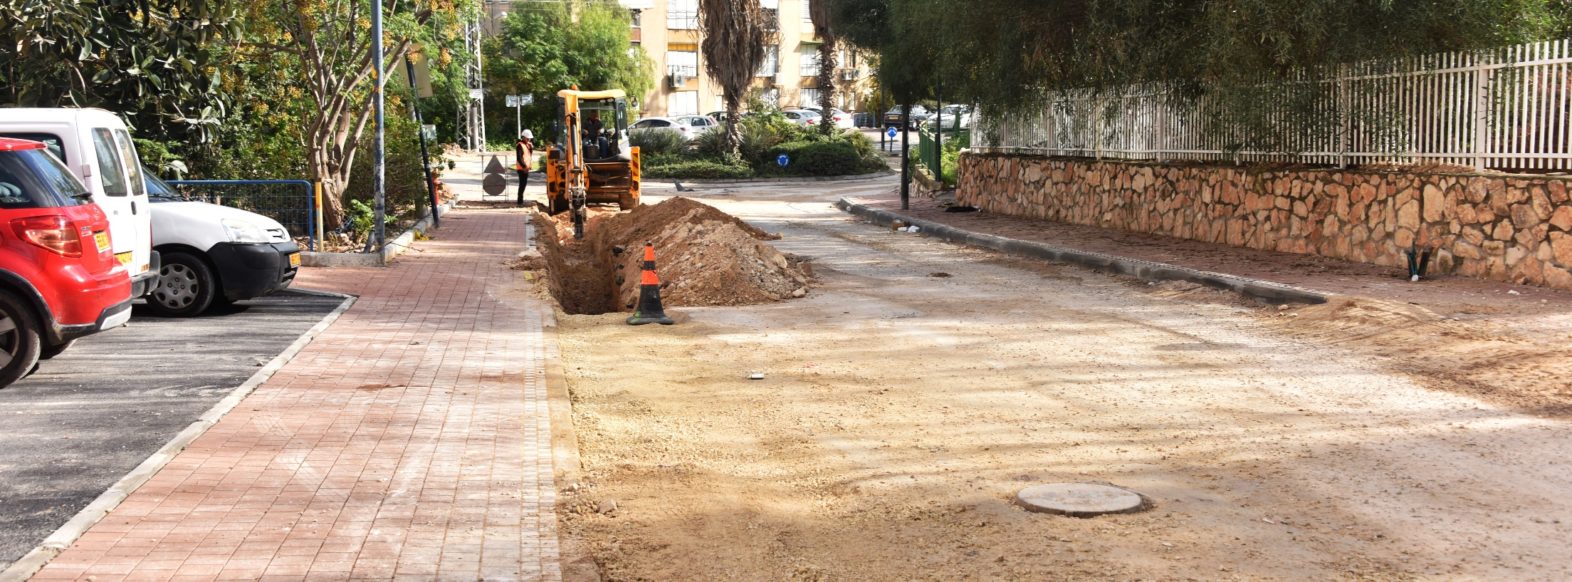 נמשכות עבודות תשתית ברחוב יצחק שדה במסגרת העבודות מתבצעות עבודות  לשיפור הכבישים